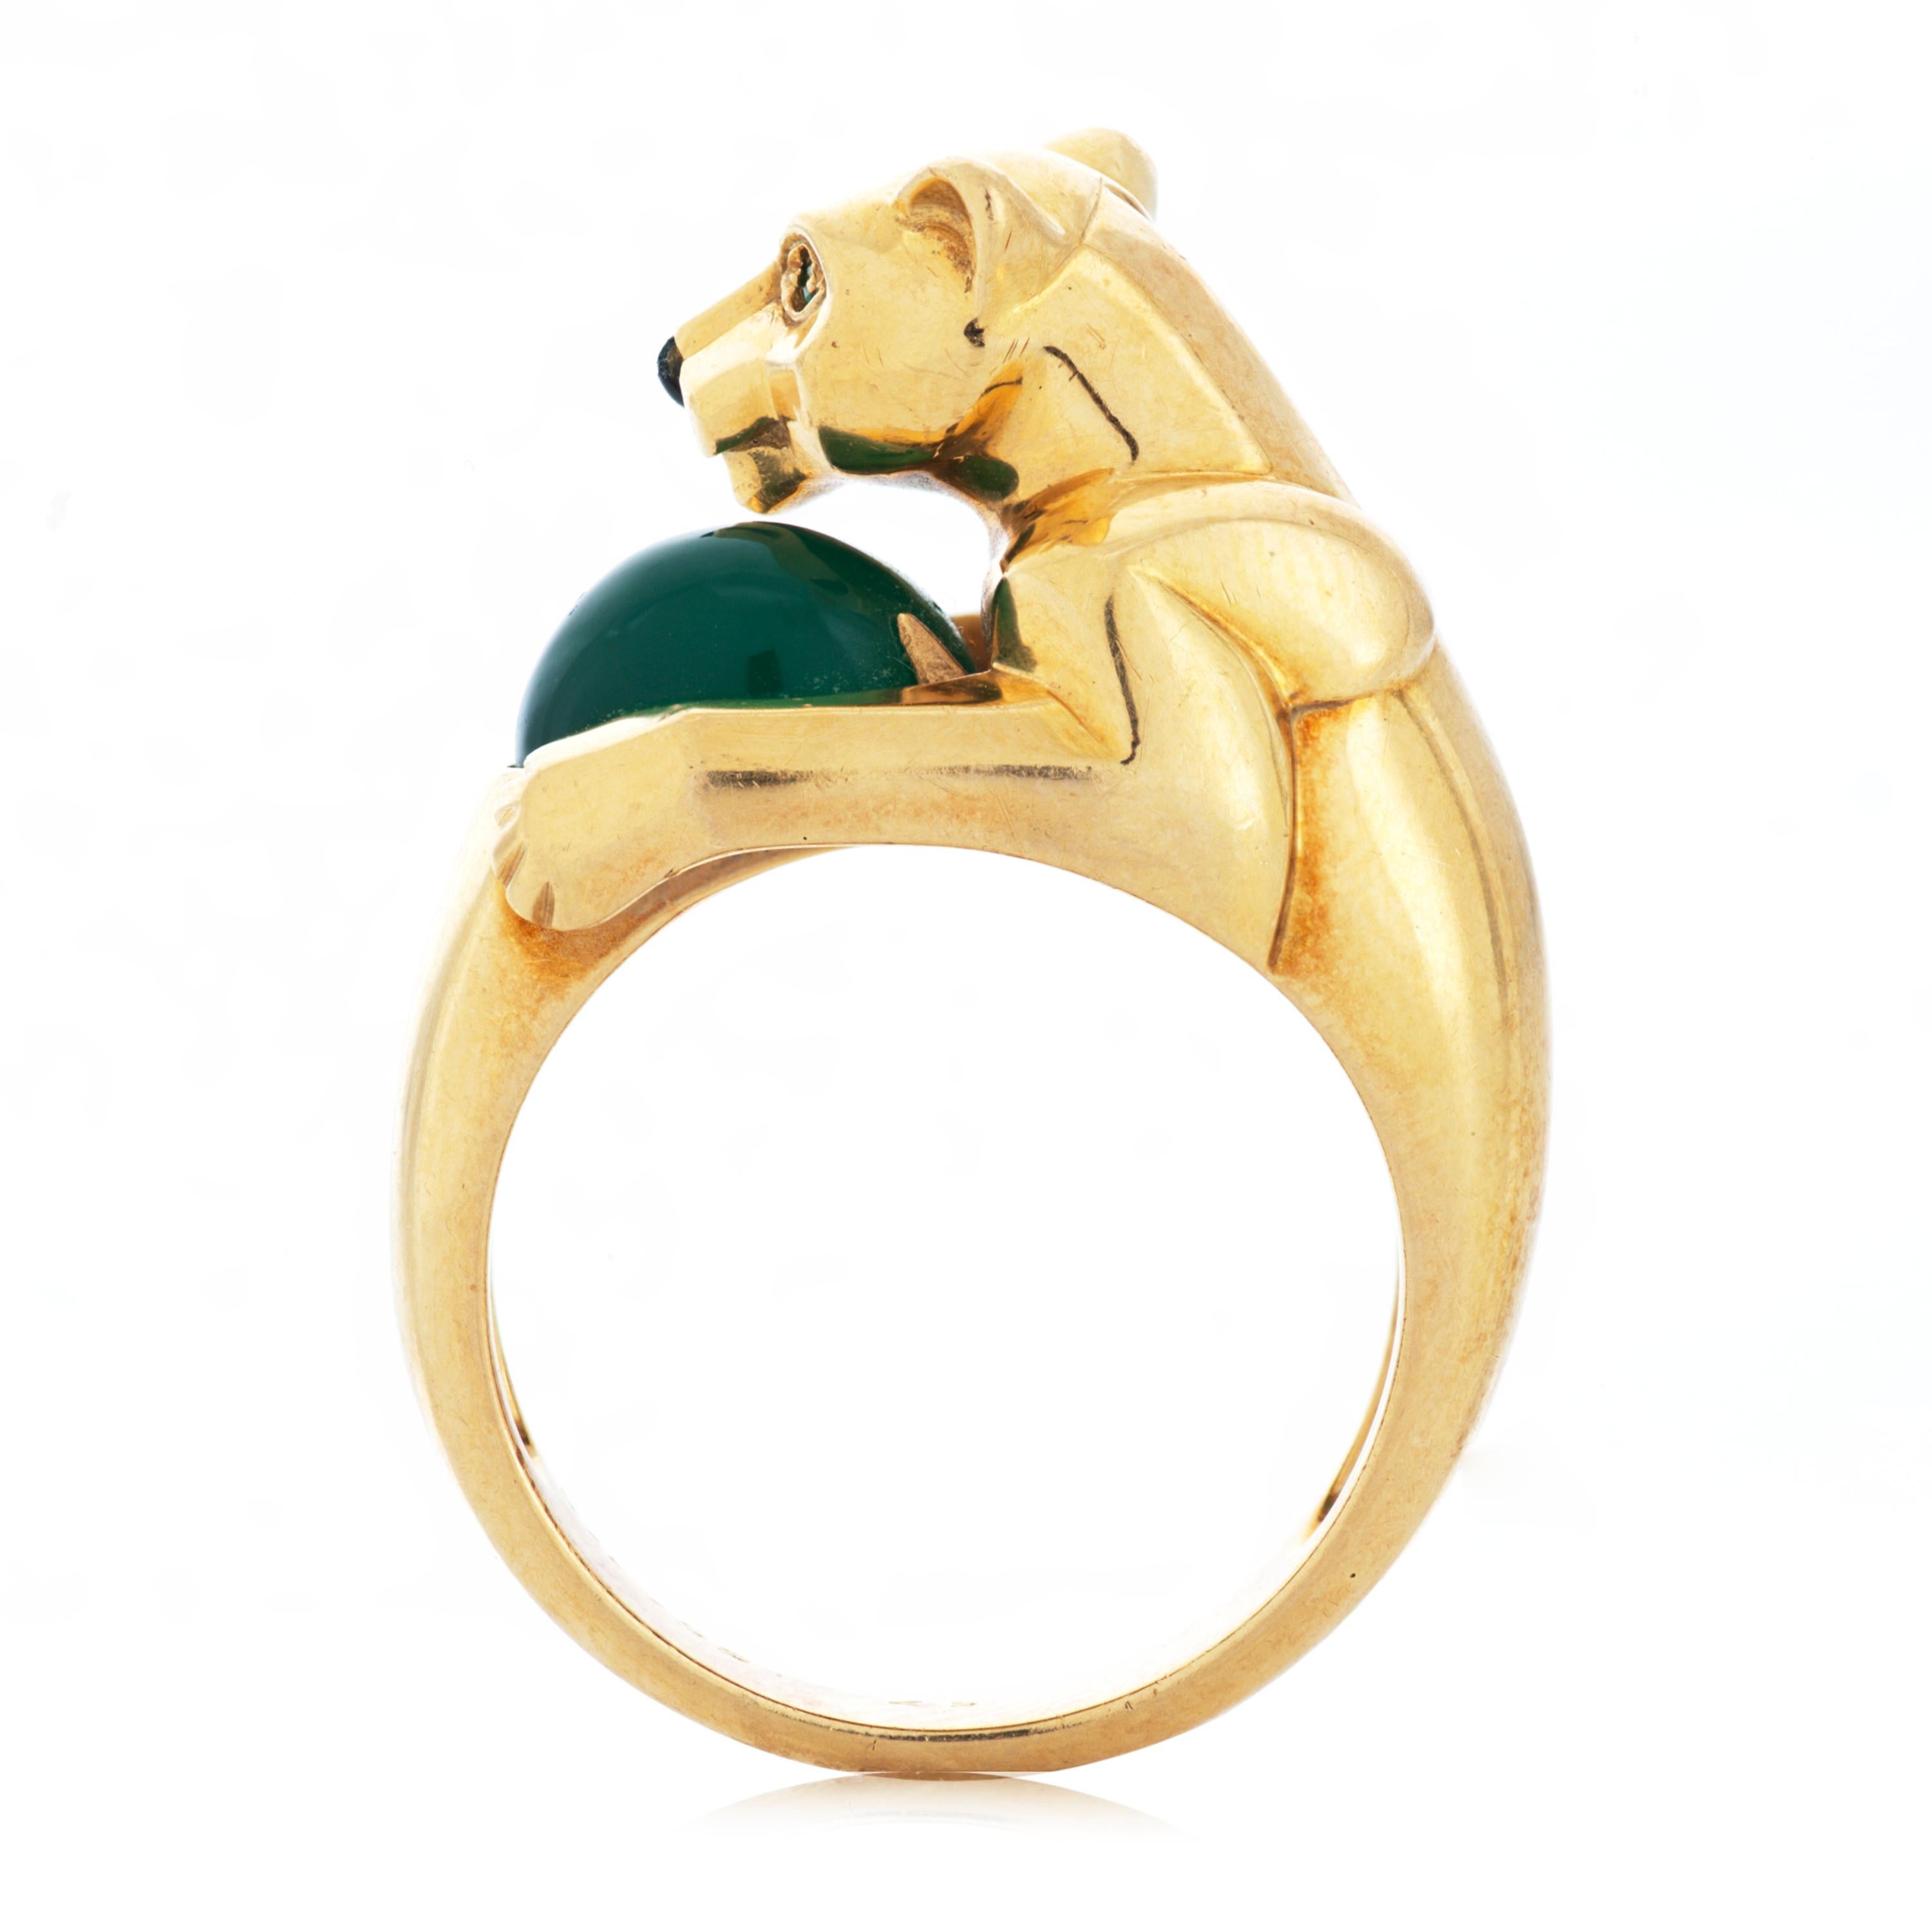 Dieser Vintage-Ring Panthere De Cartier zeigt einen Panther, der einen ovalen grünen Chrysopras-Cabochon hält.  Der Panther selbst hat zwei runde Smaragdaugen und eine geschnitzte Onyxnase, gefasst in 18 Karat Gelbgold.  Begleitet von Cartier